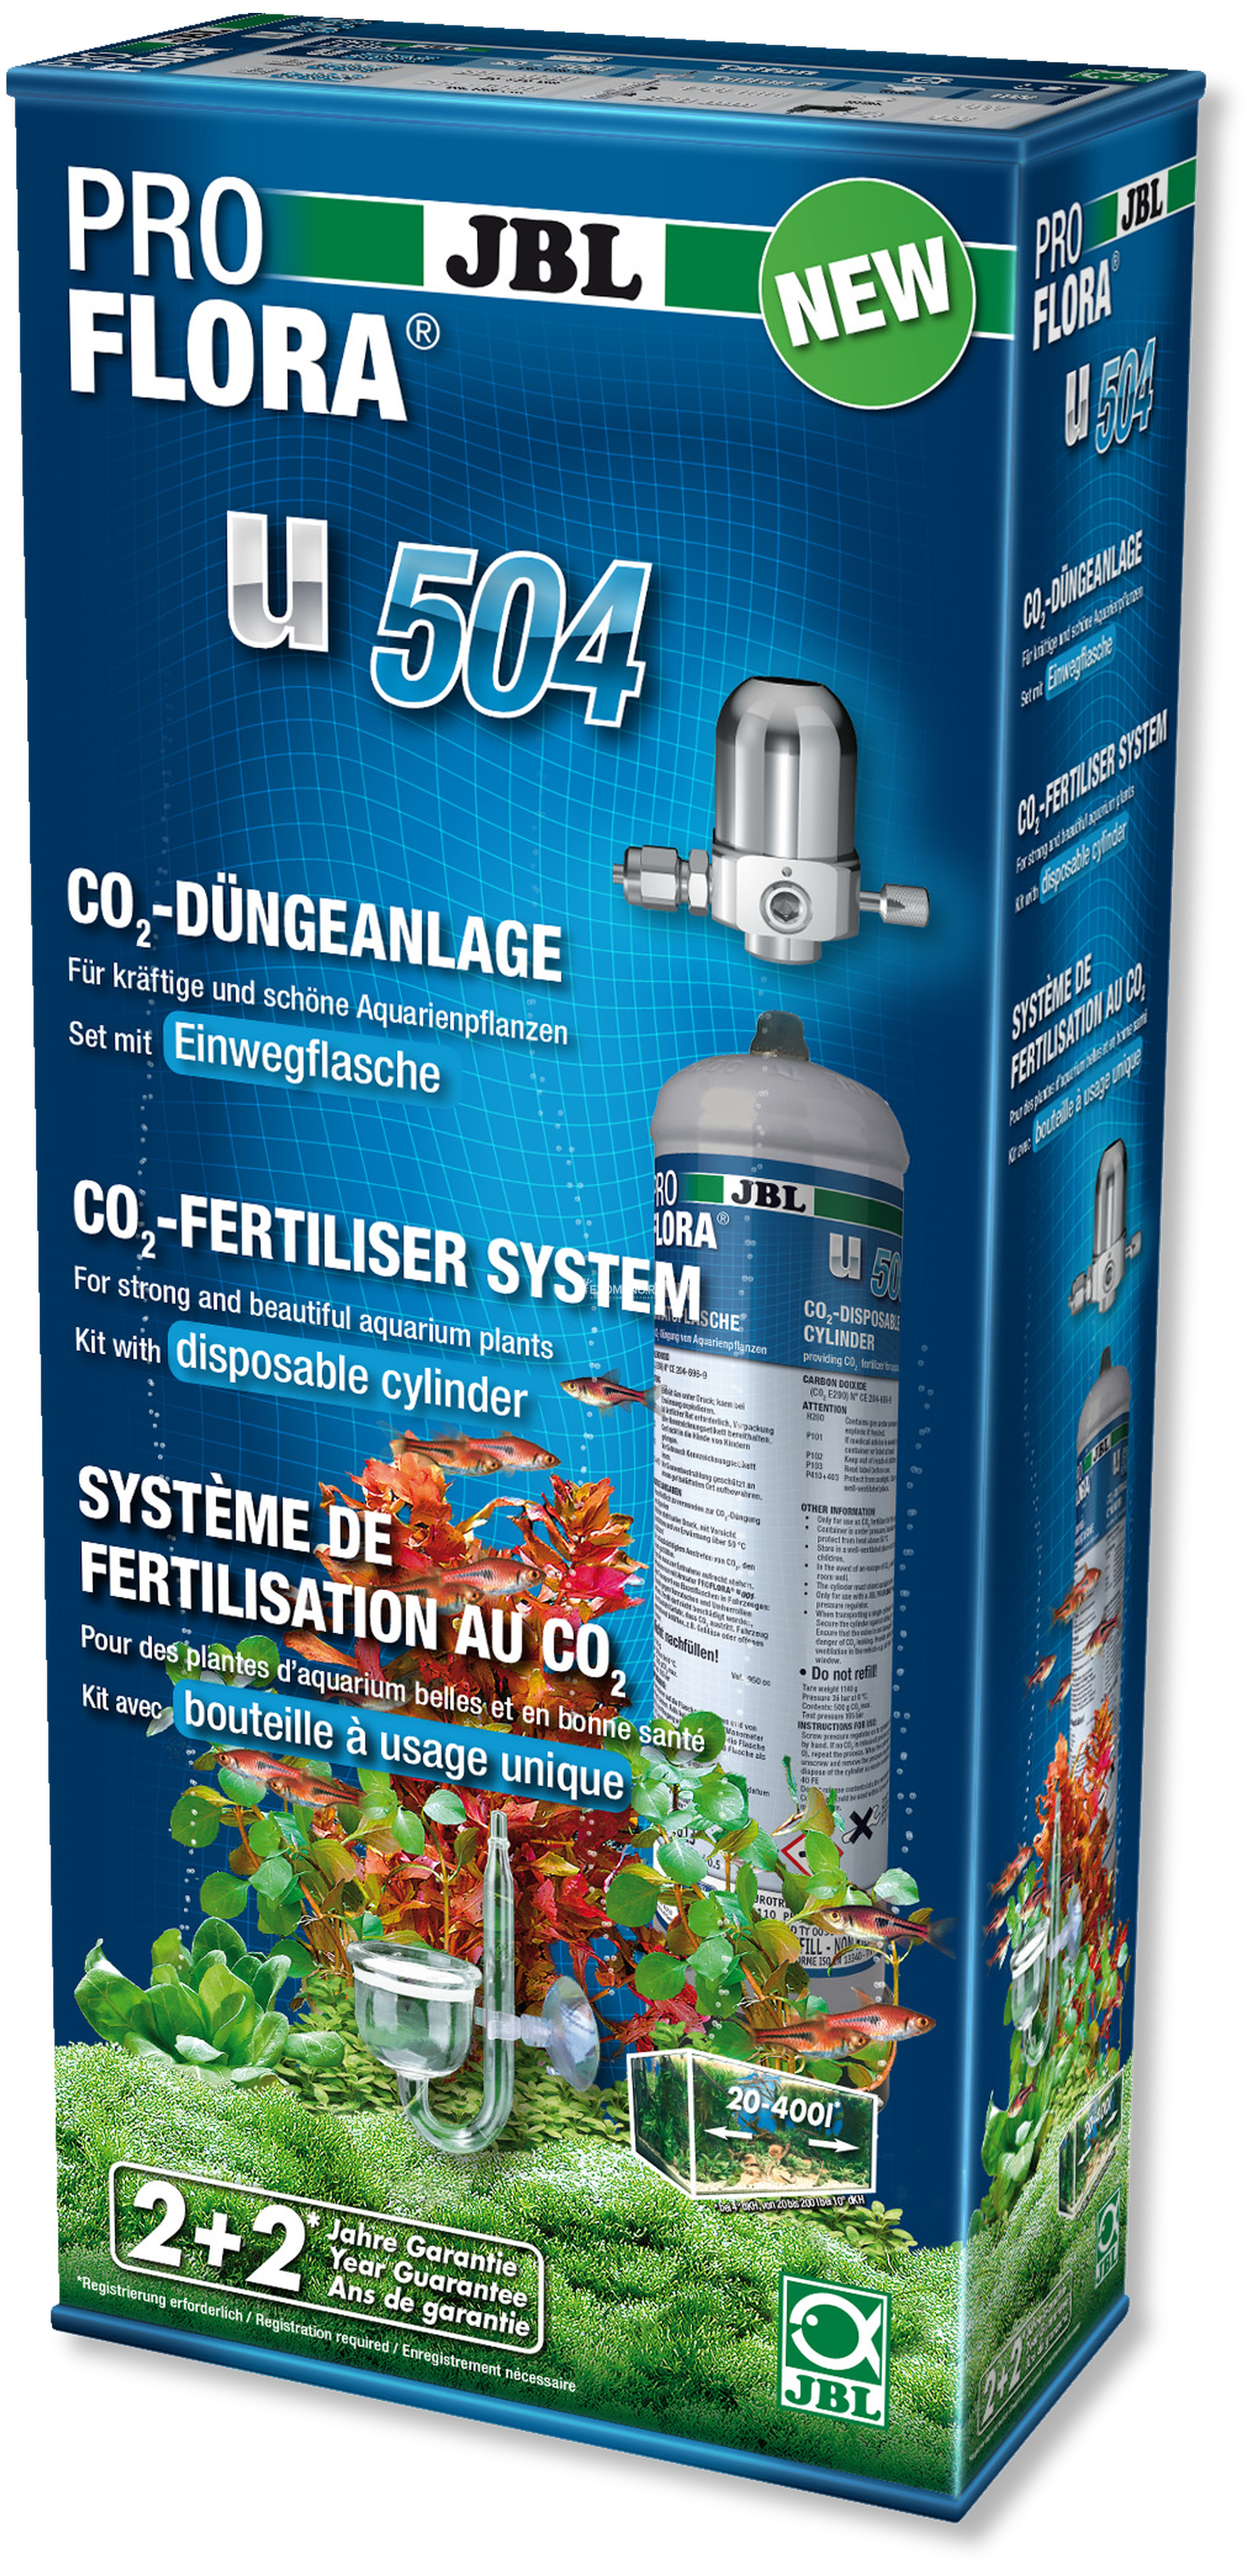 JBL ProFlora u504 - CO2-система с одноразовым баллоном для сильных и красивых растений в аквариумах 20-400 л (ПОД ЗАКАЗ)